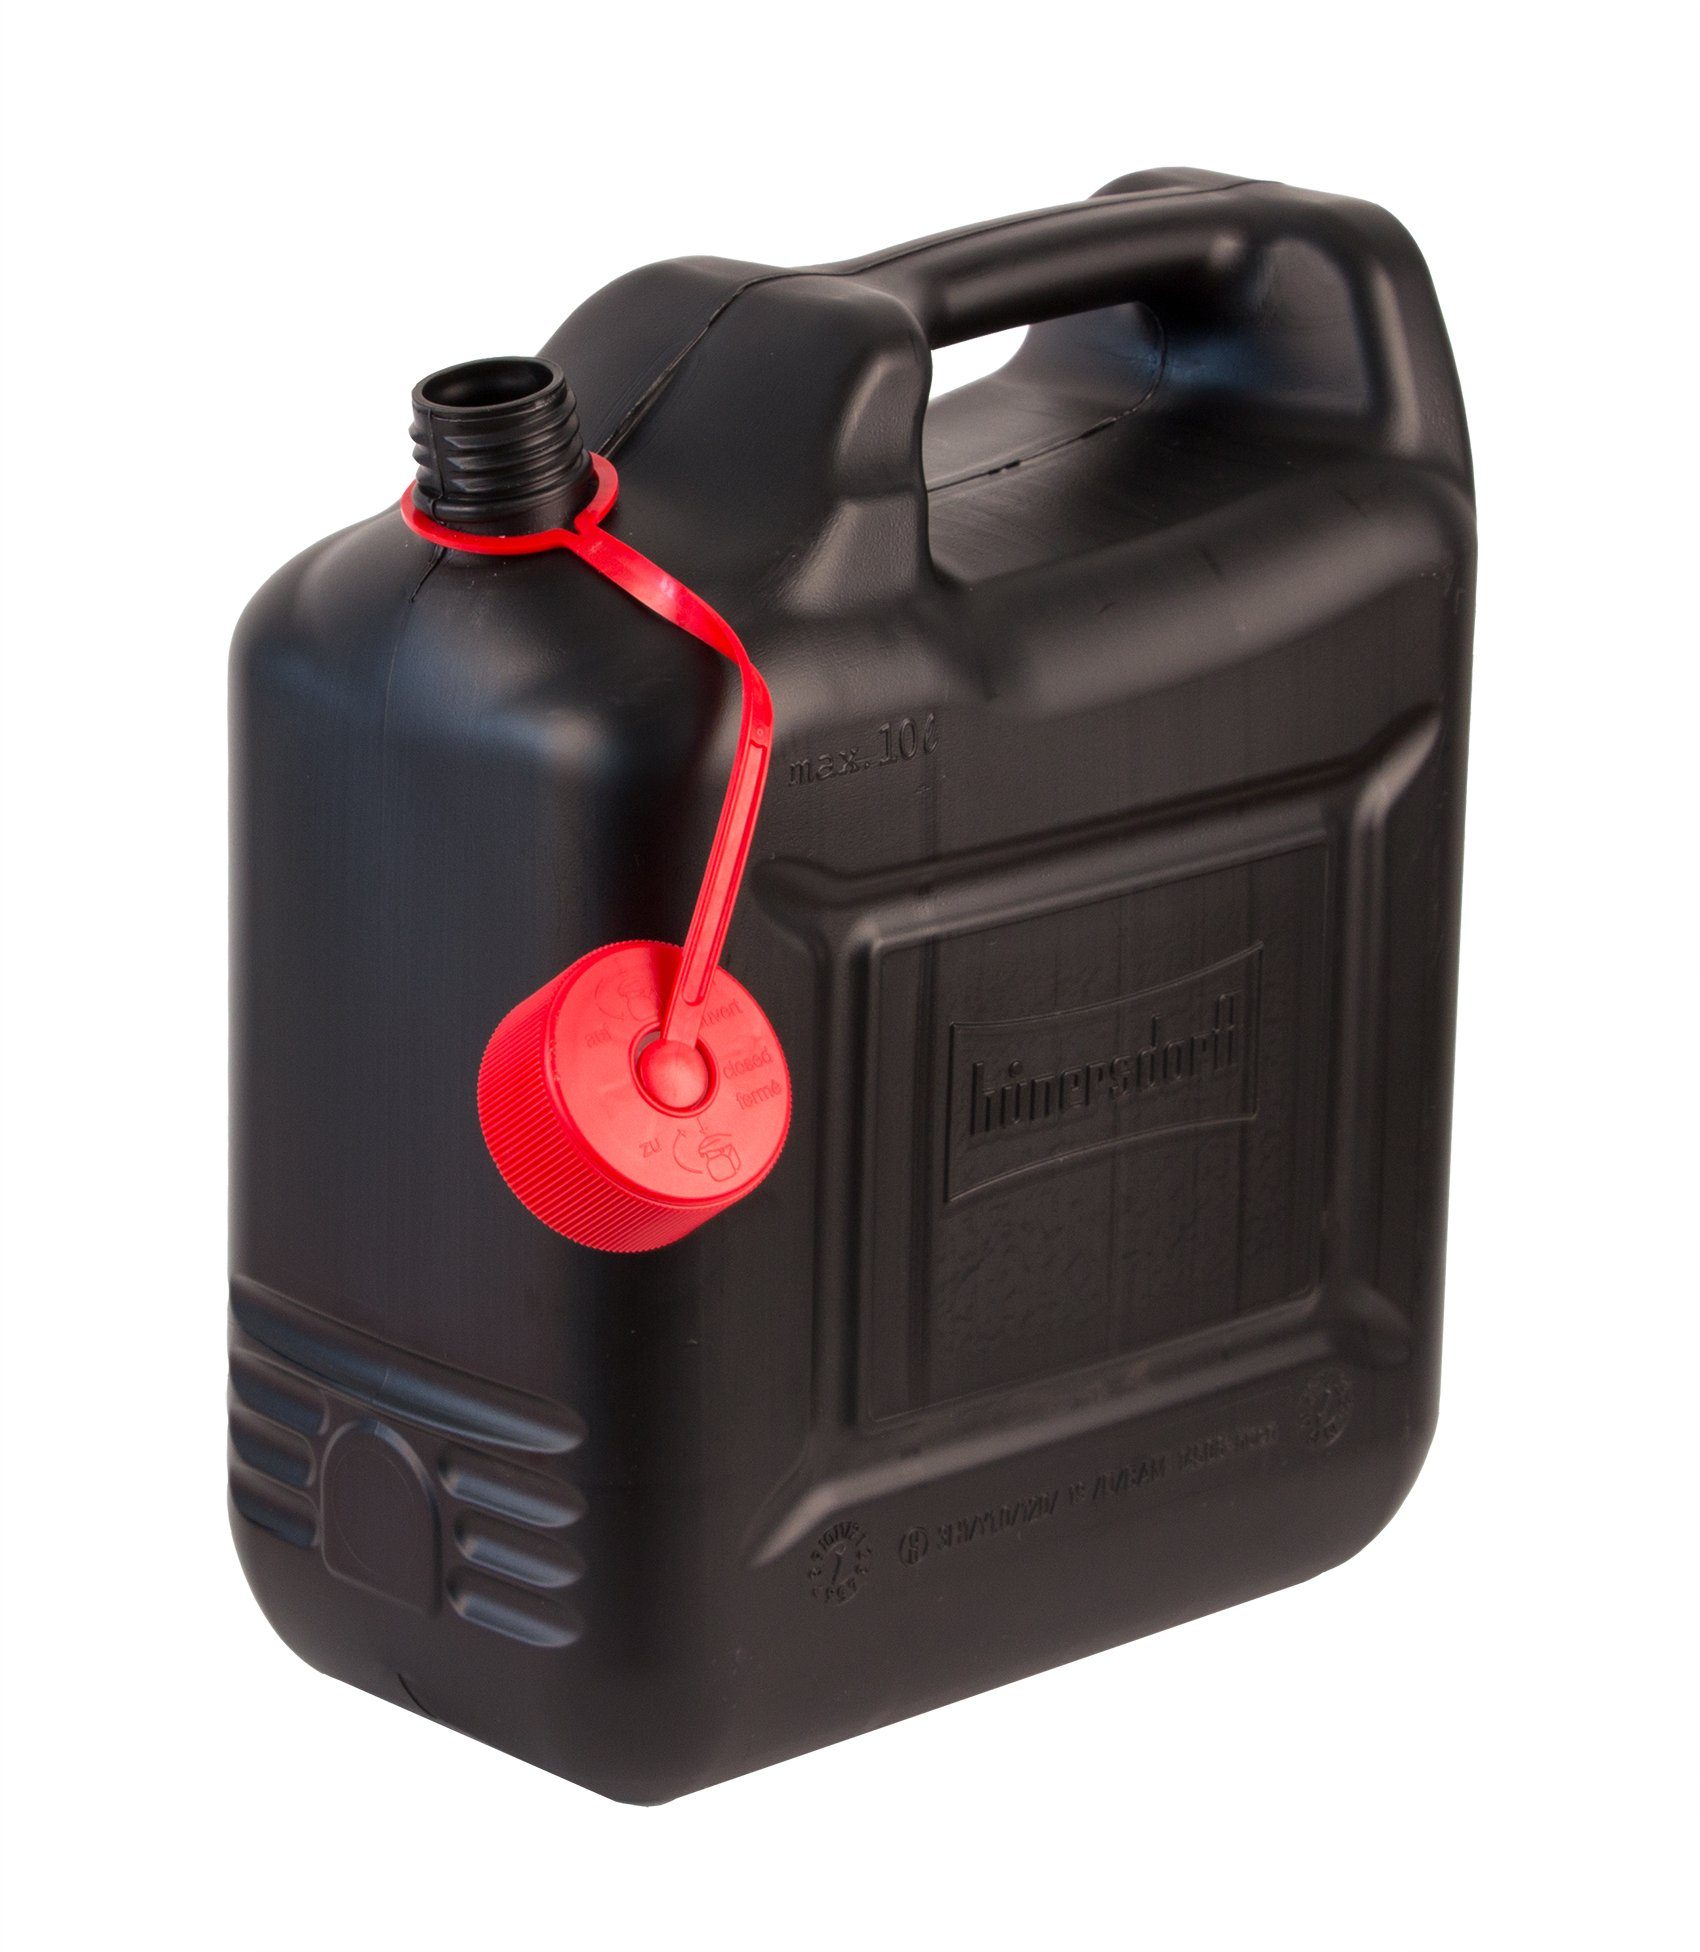 Combi-Kanister 10 Liter, 22,90 €